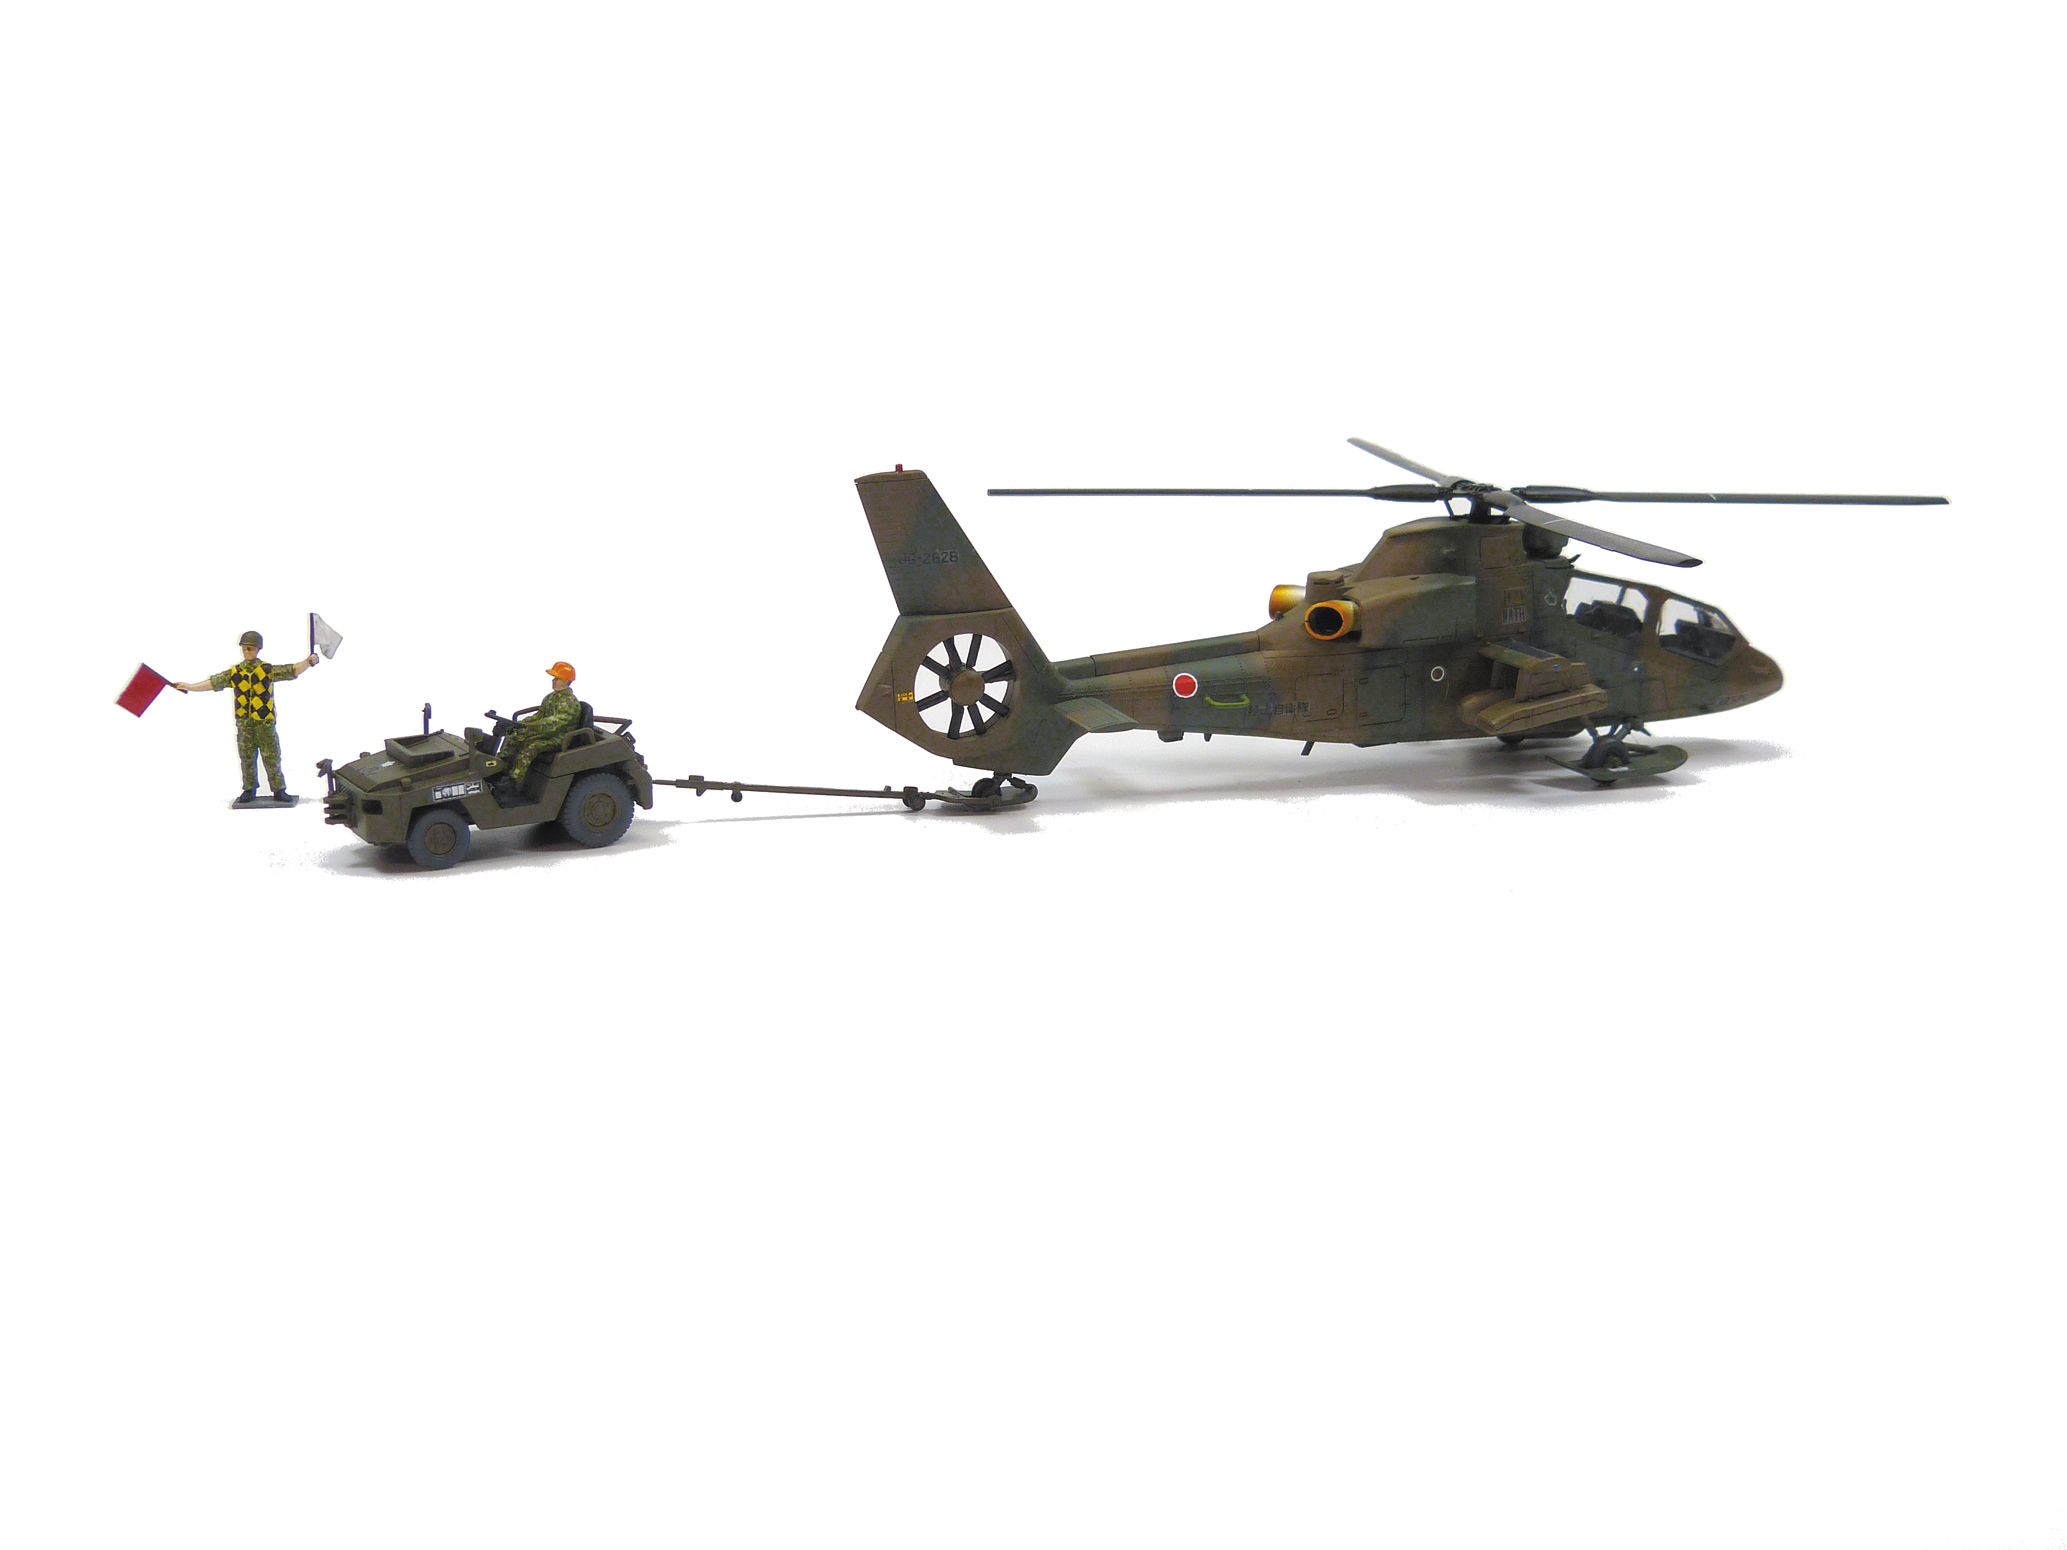 1/72　陸上自衛隊 観測ヘリコプター OH-1 ニンジャ&トーイングトラクターセット - ウインドウを閉じる